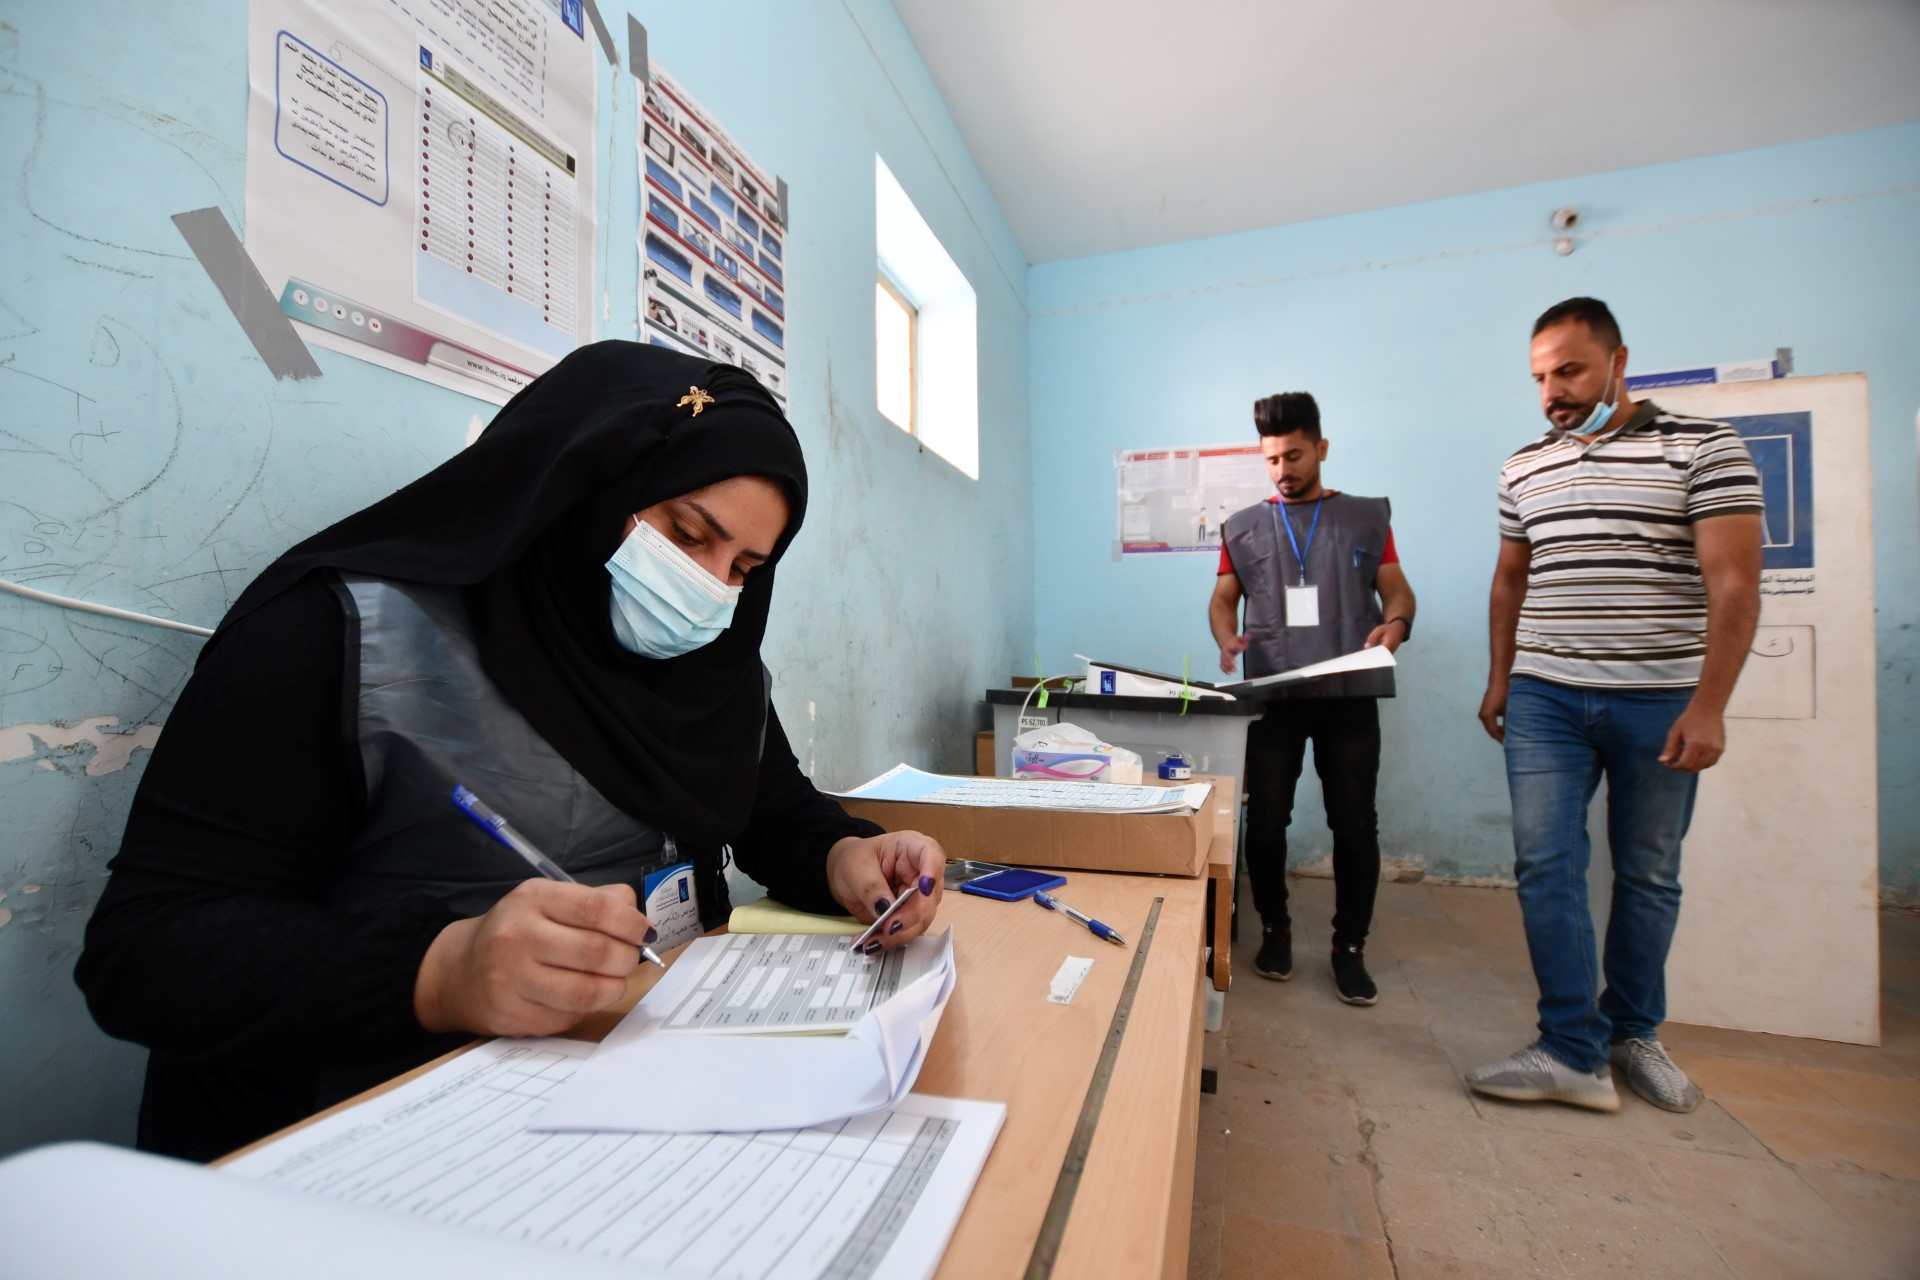 من يريد تأجيل انتخابات مجالس المحافظات العراقية؟